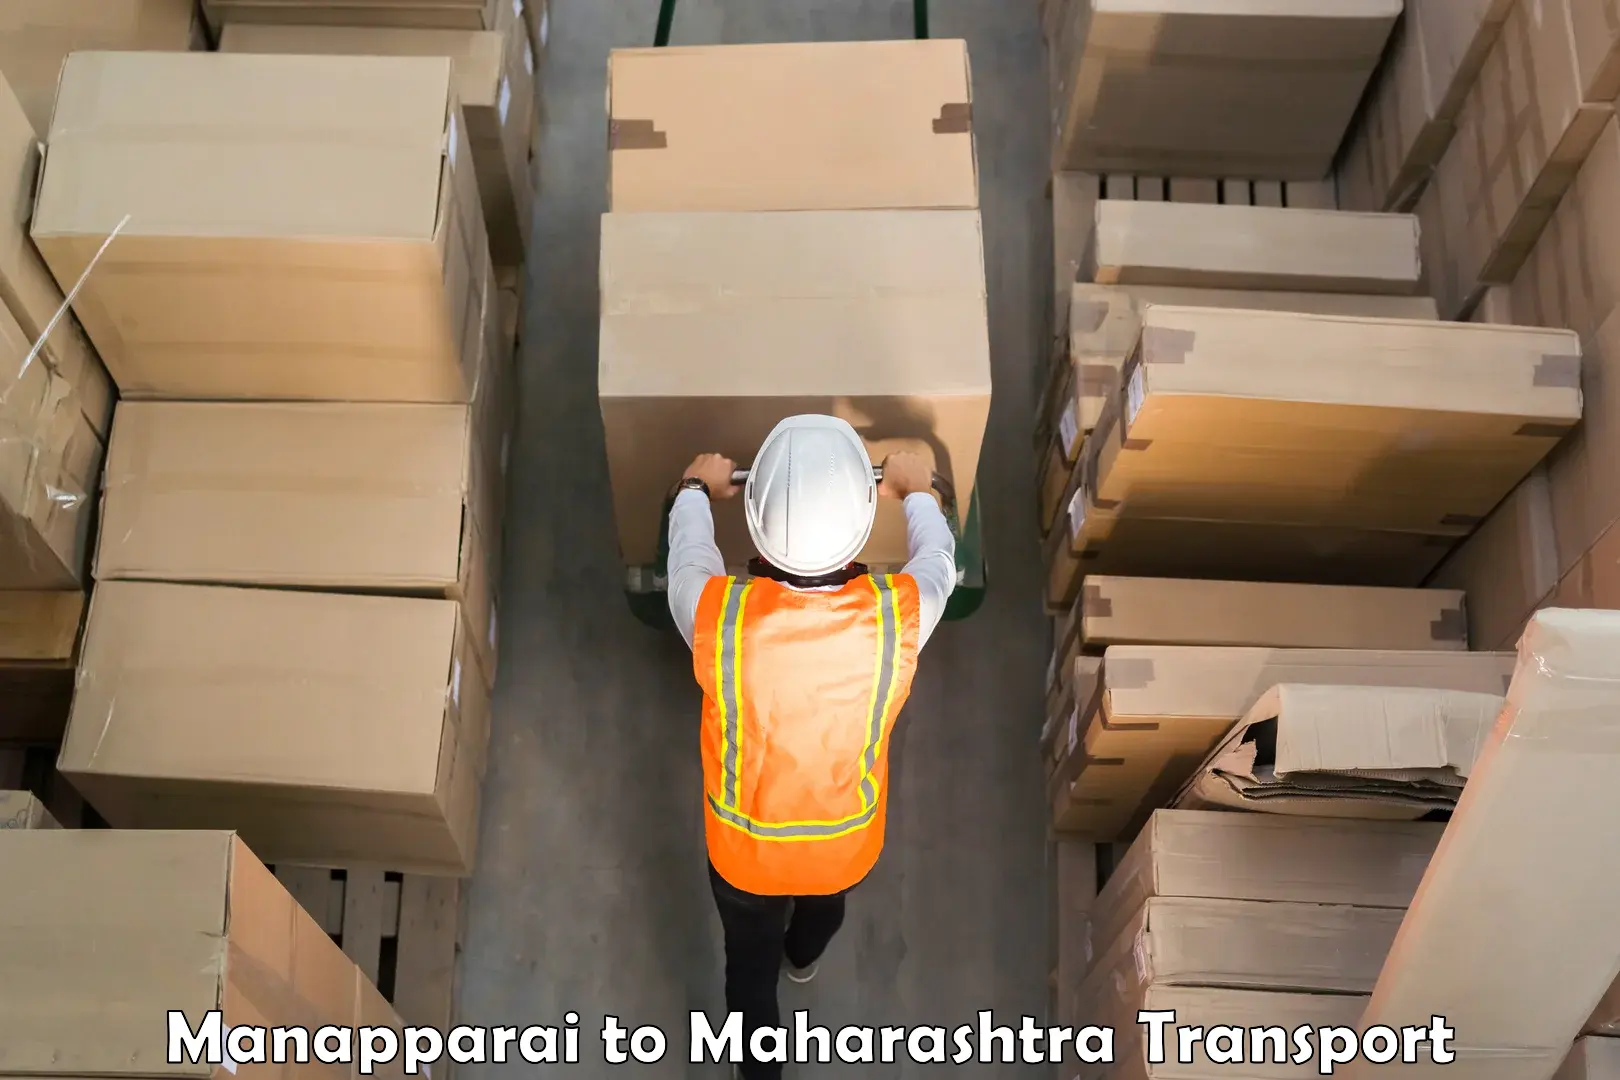 Cargo train transport services Manapparai to Mahabaleshwar